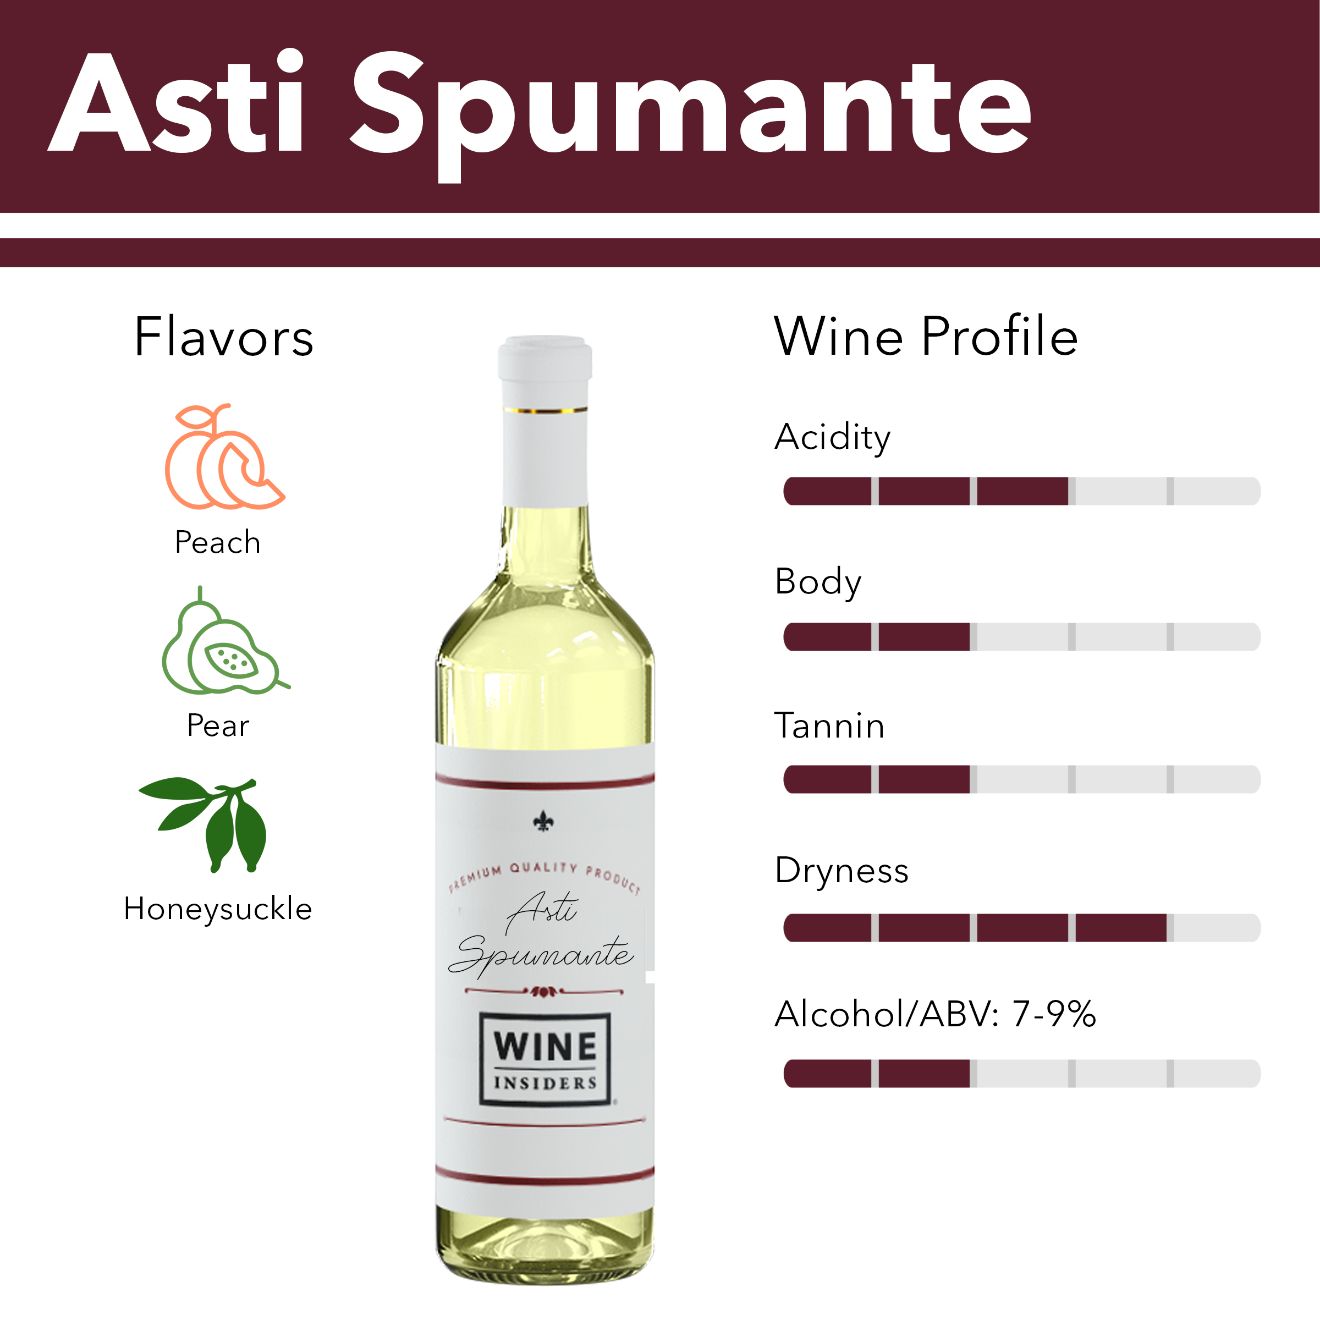 Asti Spumante wine flavor profile